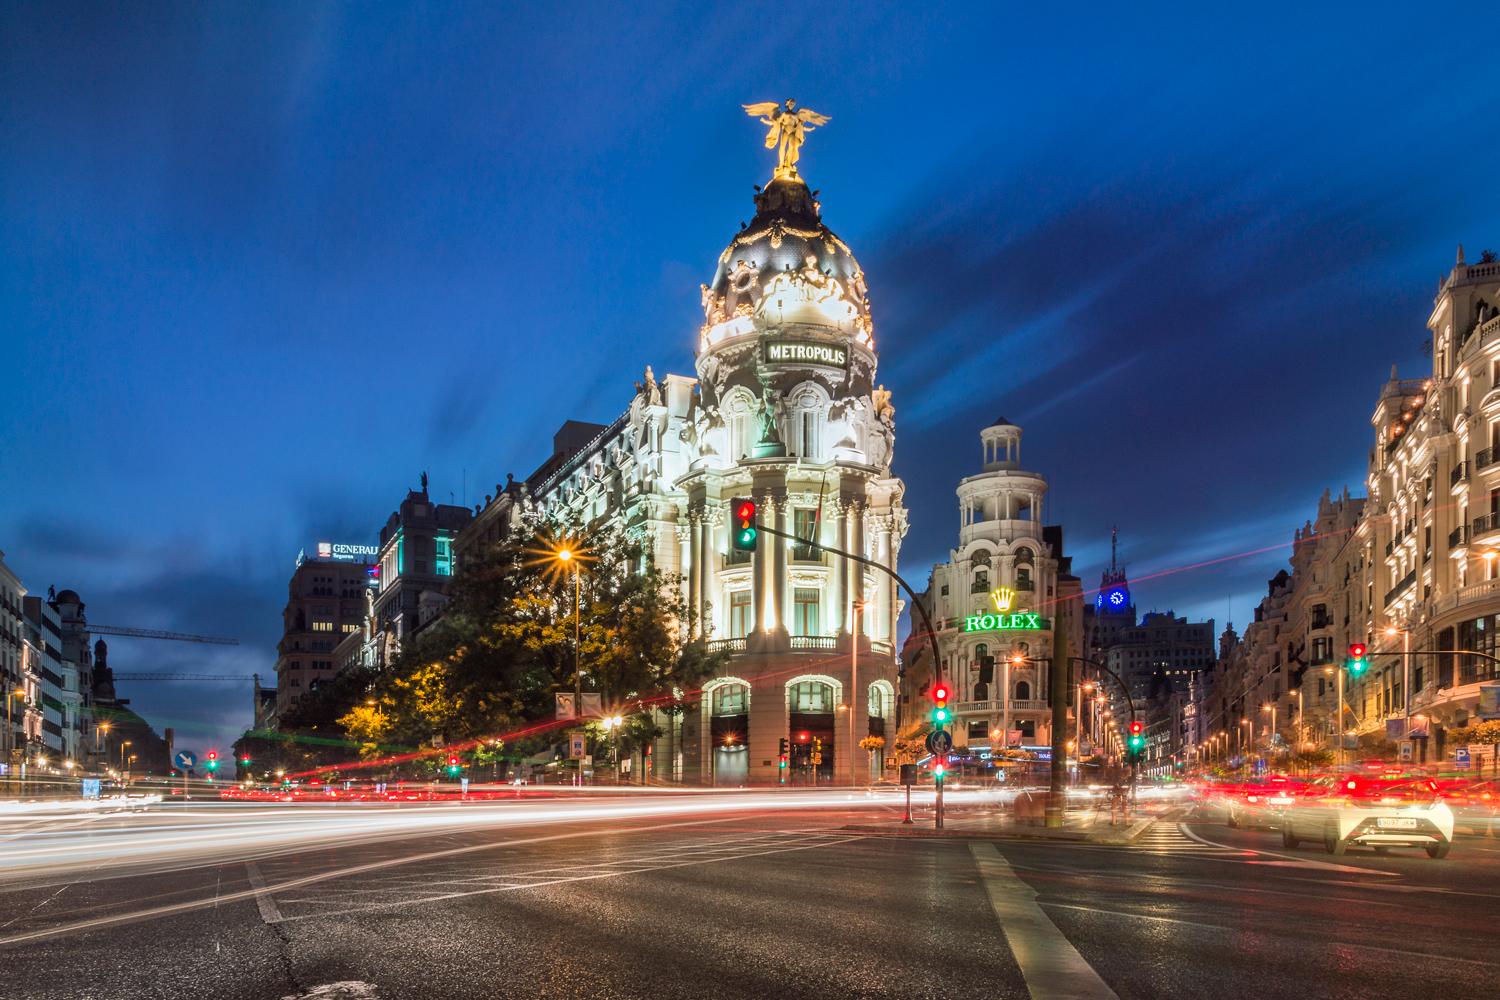 La calle Alcalá de Madrid es una de las arterias principal, con un recorrido de 11 kilómetros desde el centro de Madrid hacia el este-nordeste de la ciudad.es de la capital